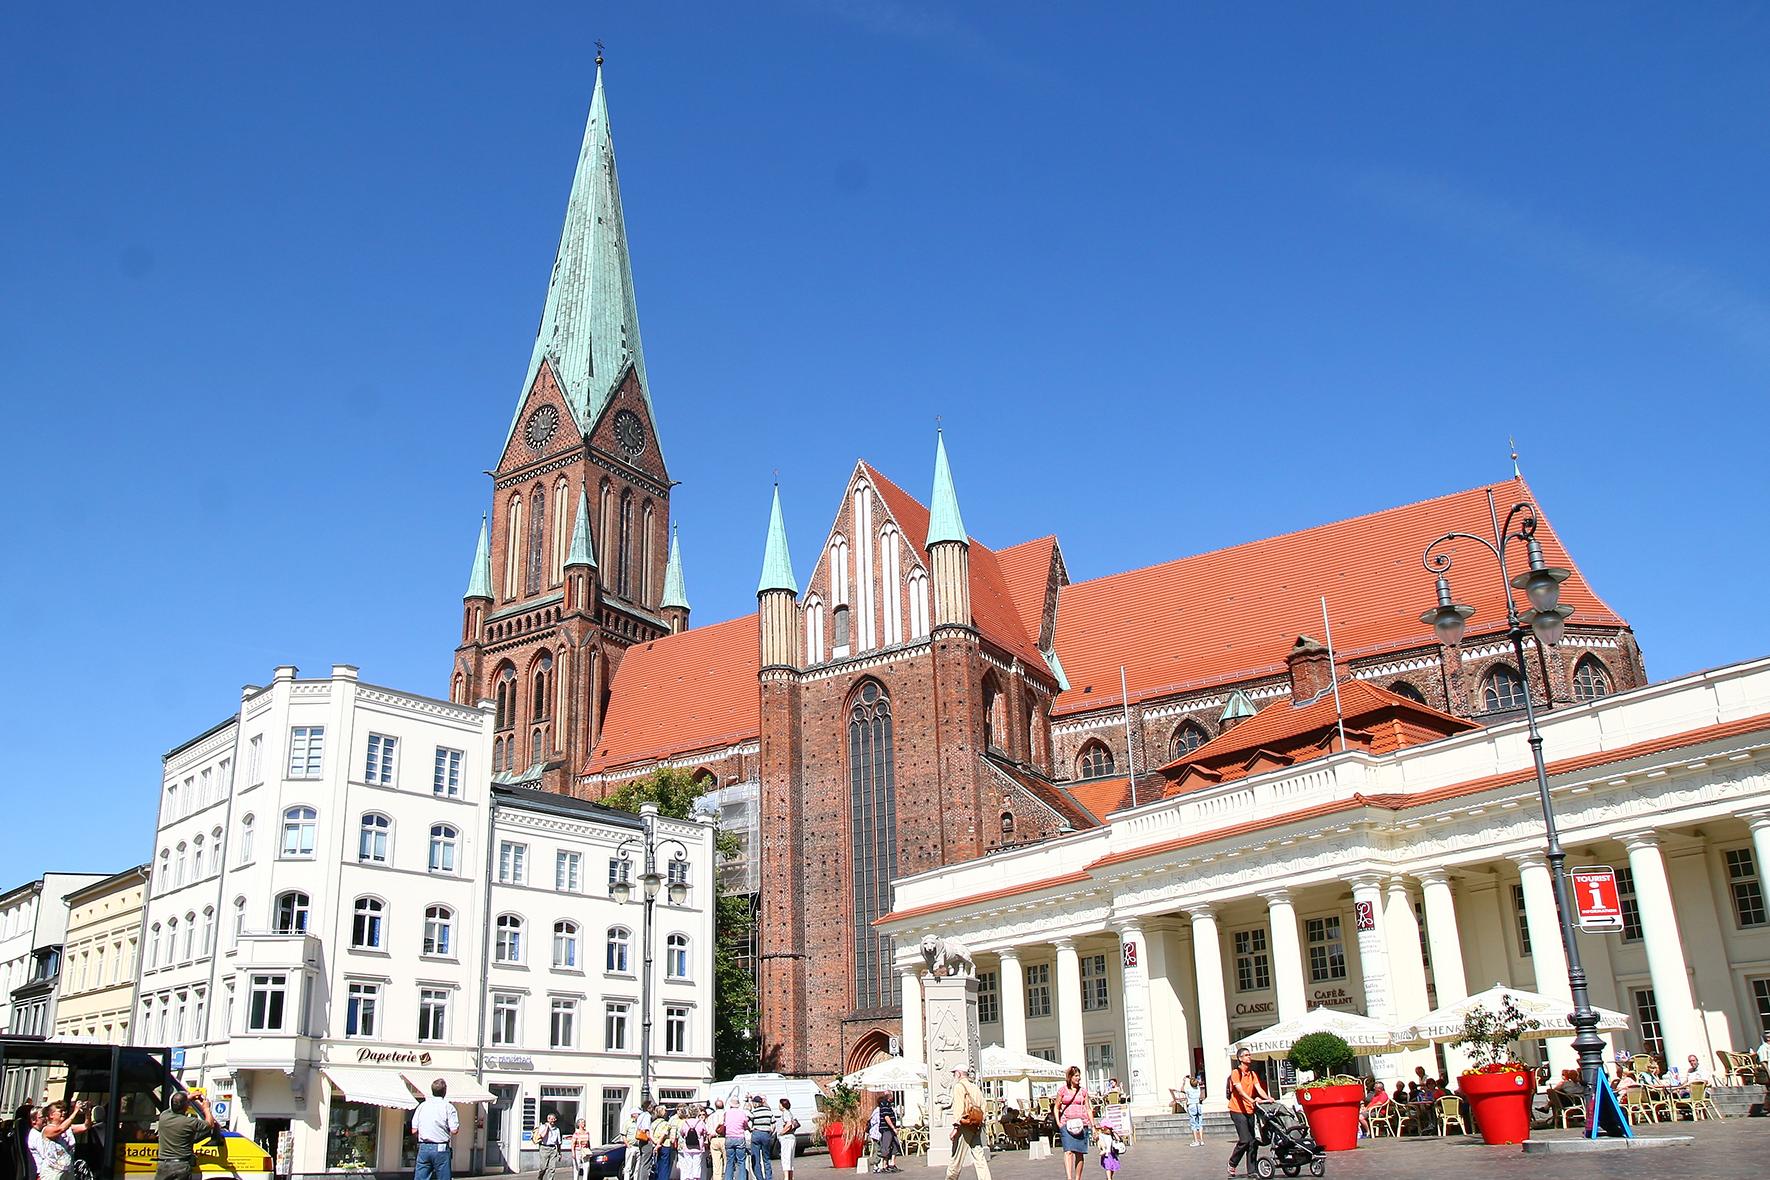 Vom Marktplatz aus betrachtet überragt der Schweriner Dom im Stil der Backsteingotik andere vorstehende Gebäude.  